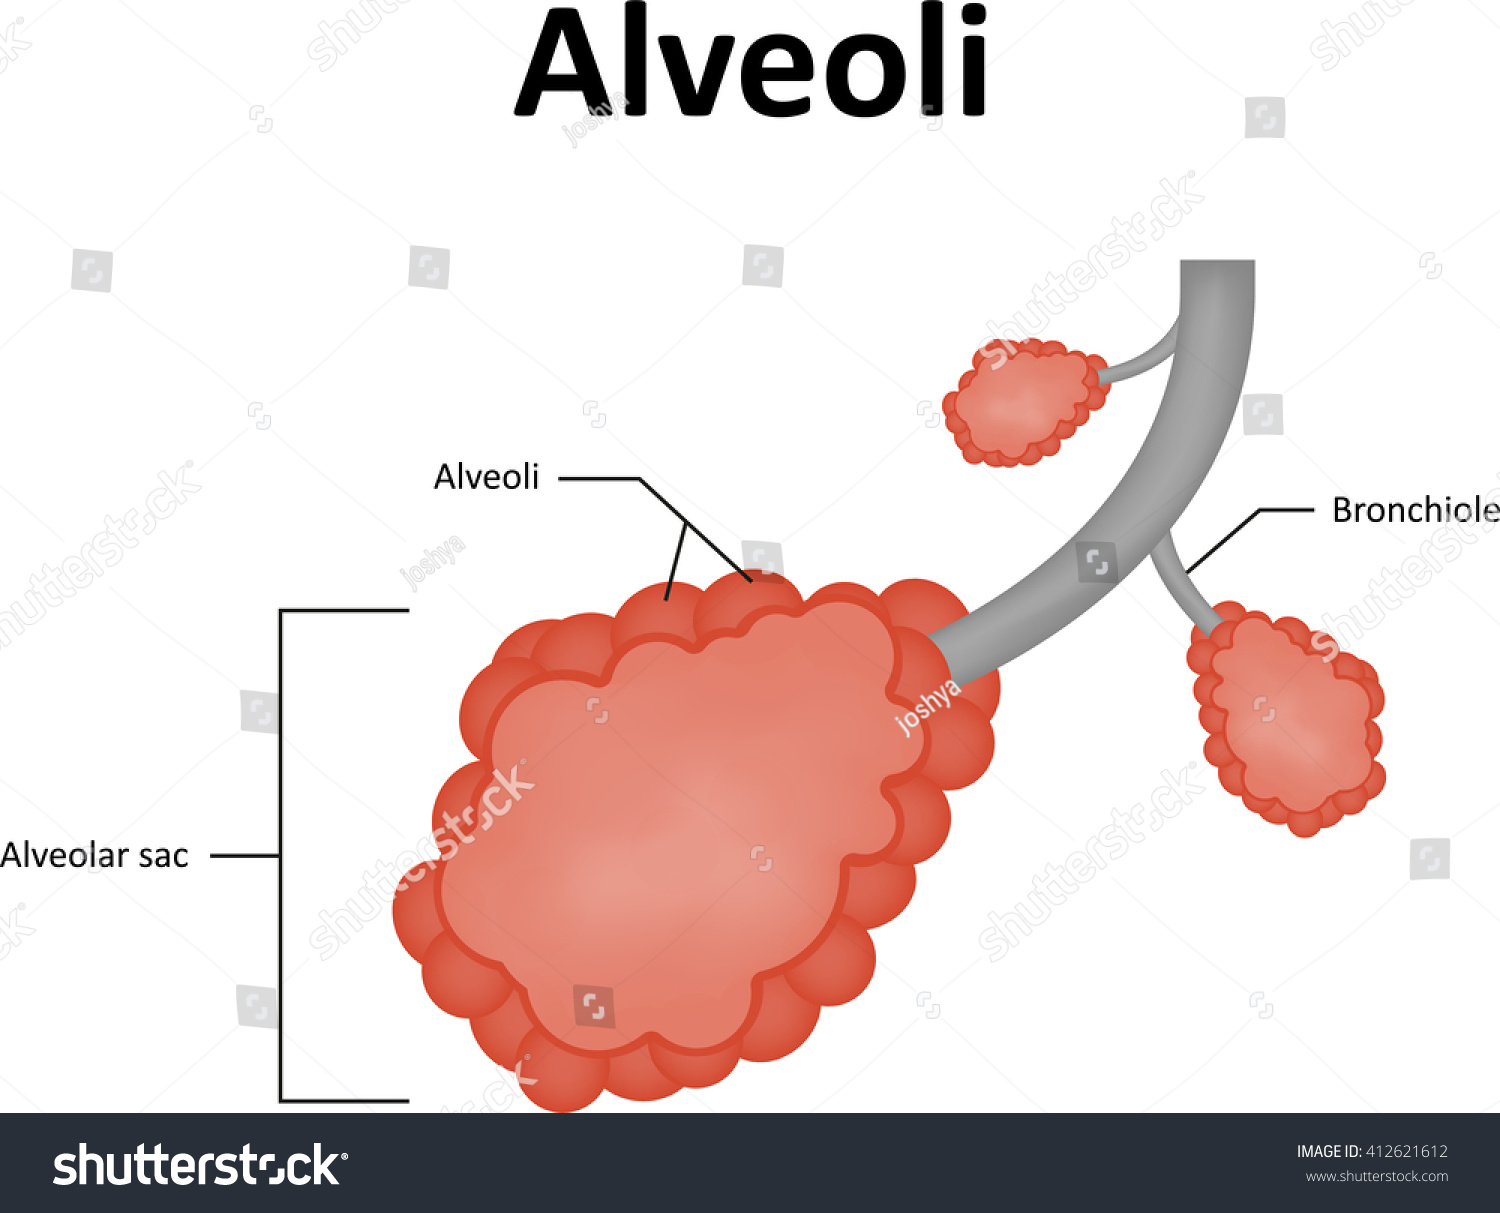 بلى معدات الملعب وخز alveoli labeled الغموض تسجيل النهاية